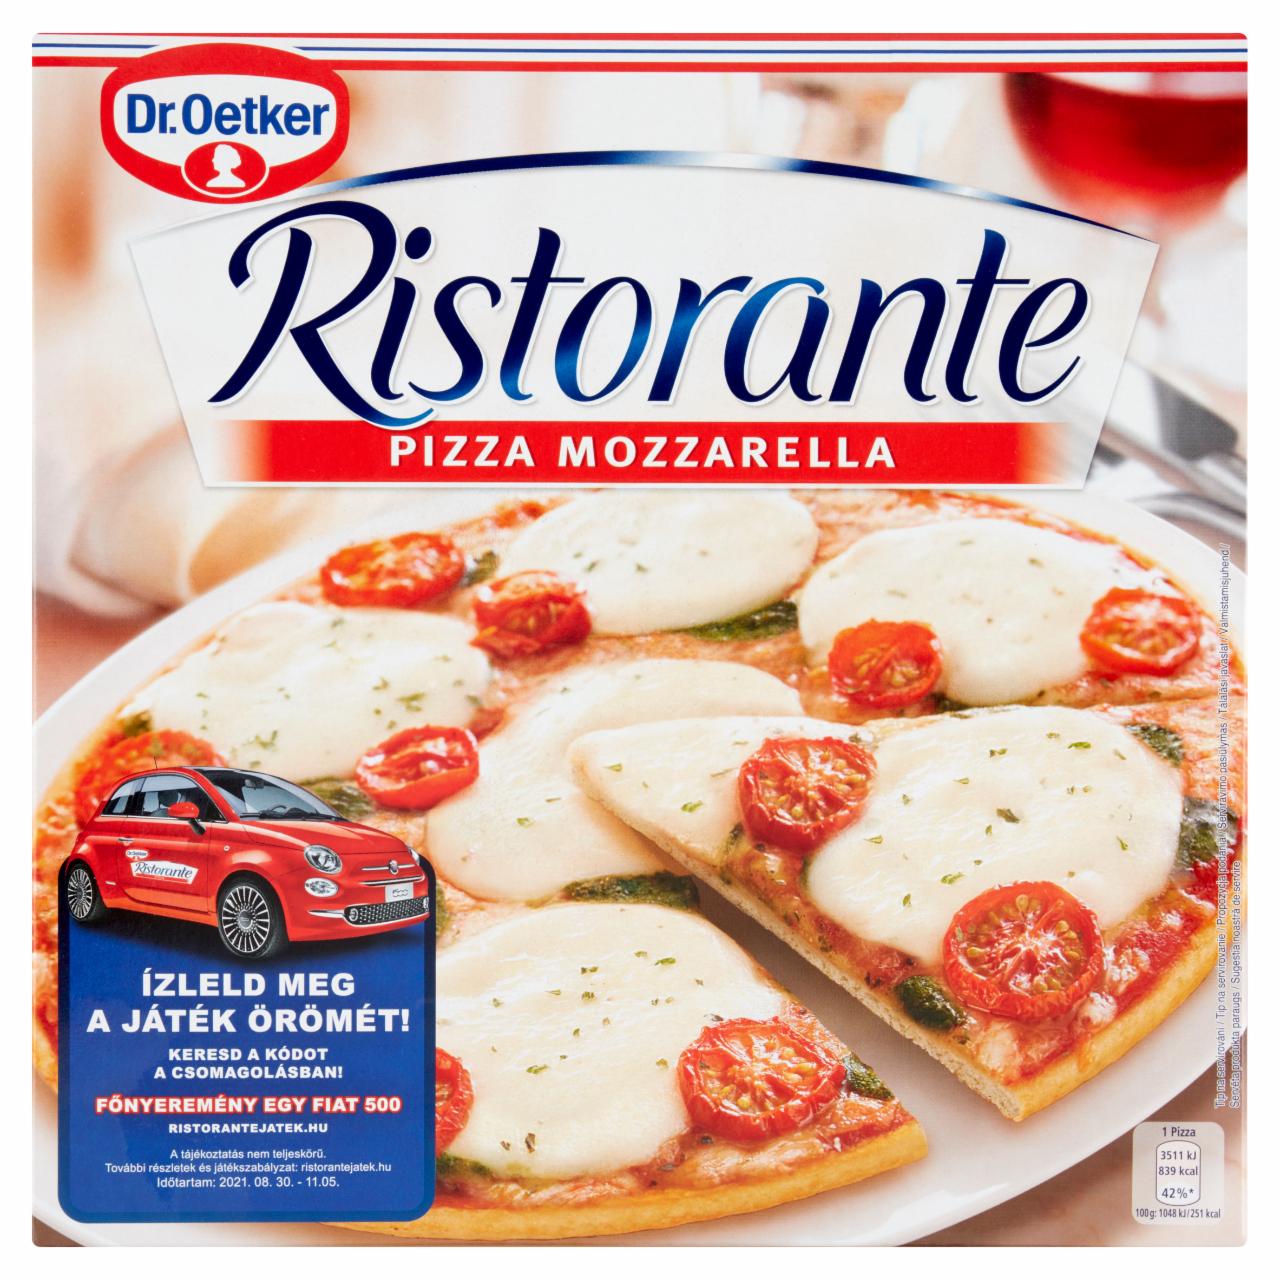 Fotografie - Ristorante Pizza Mozzarella Dr. Oetker